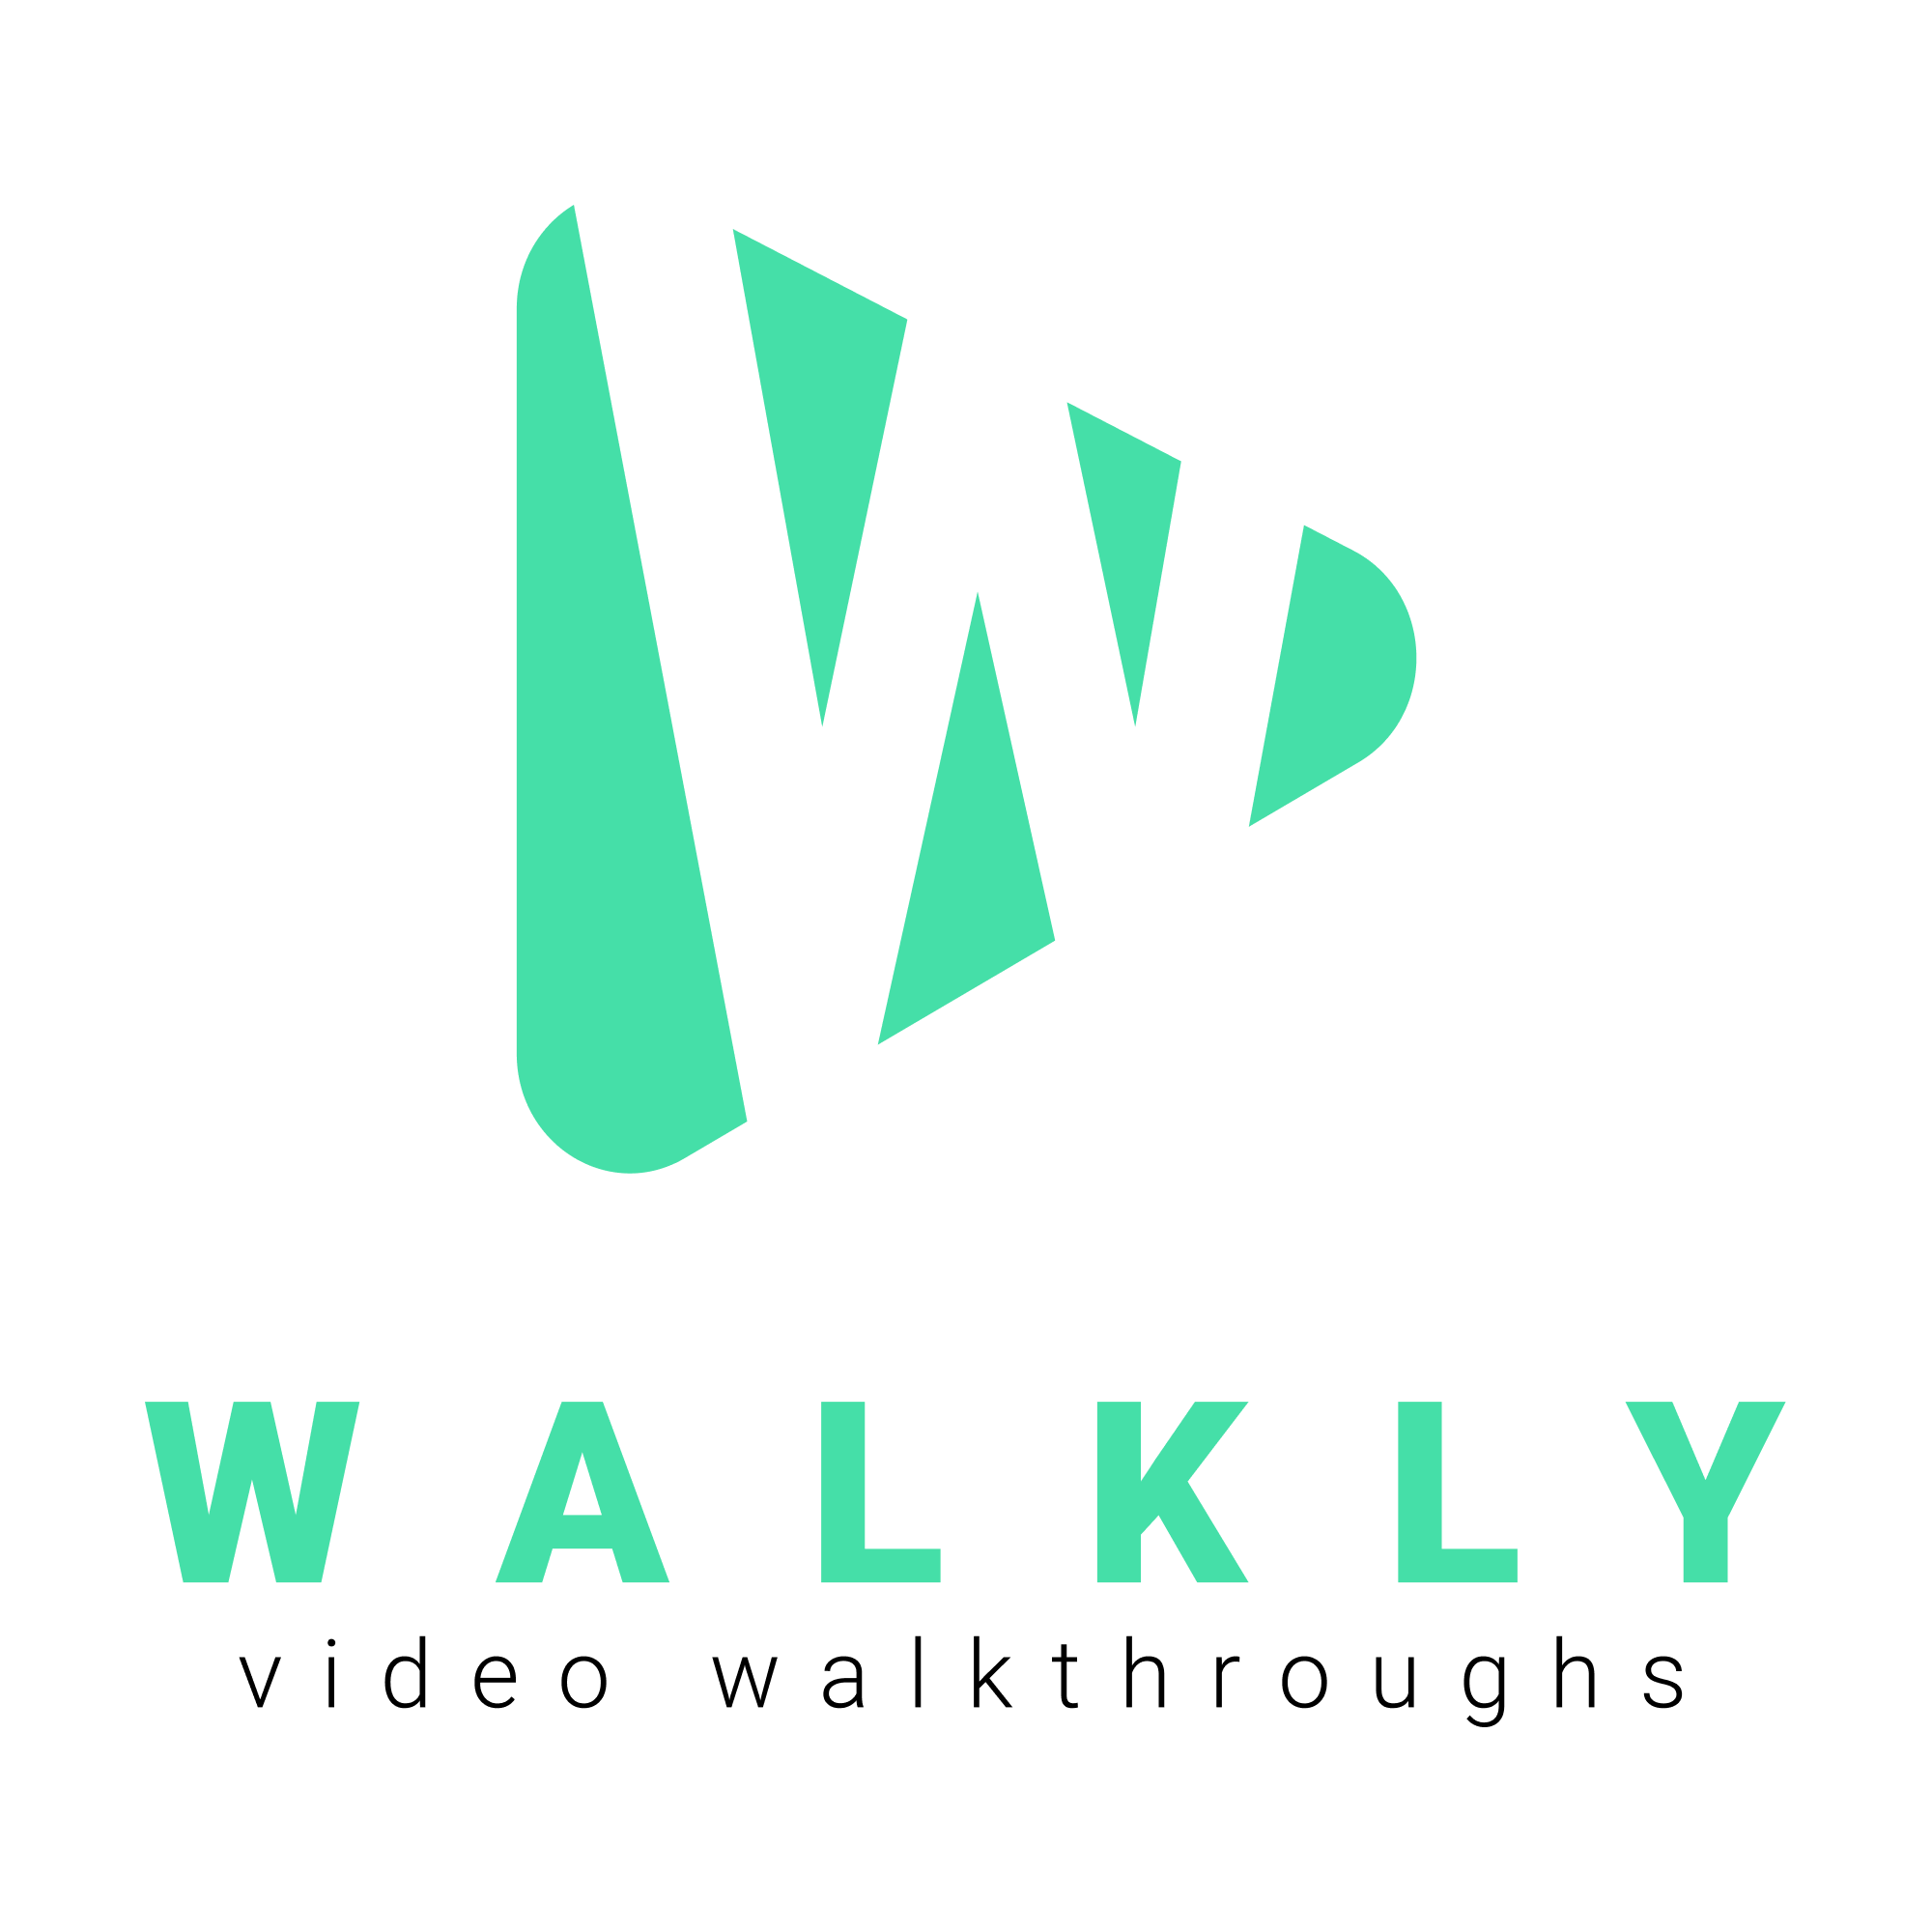 Walkly